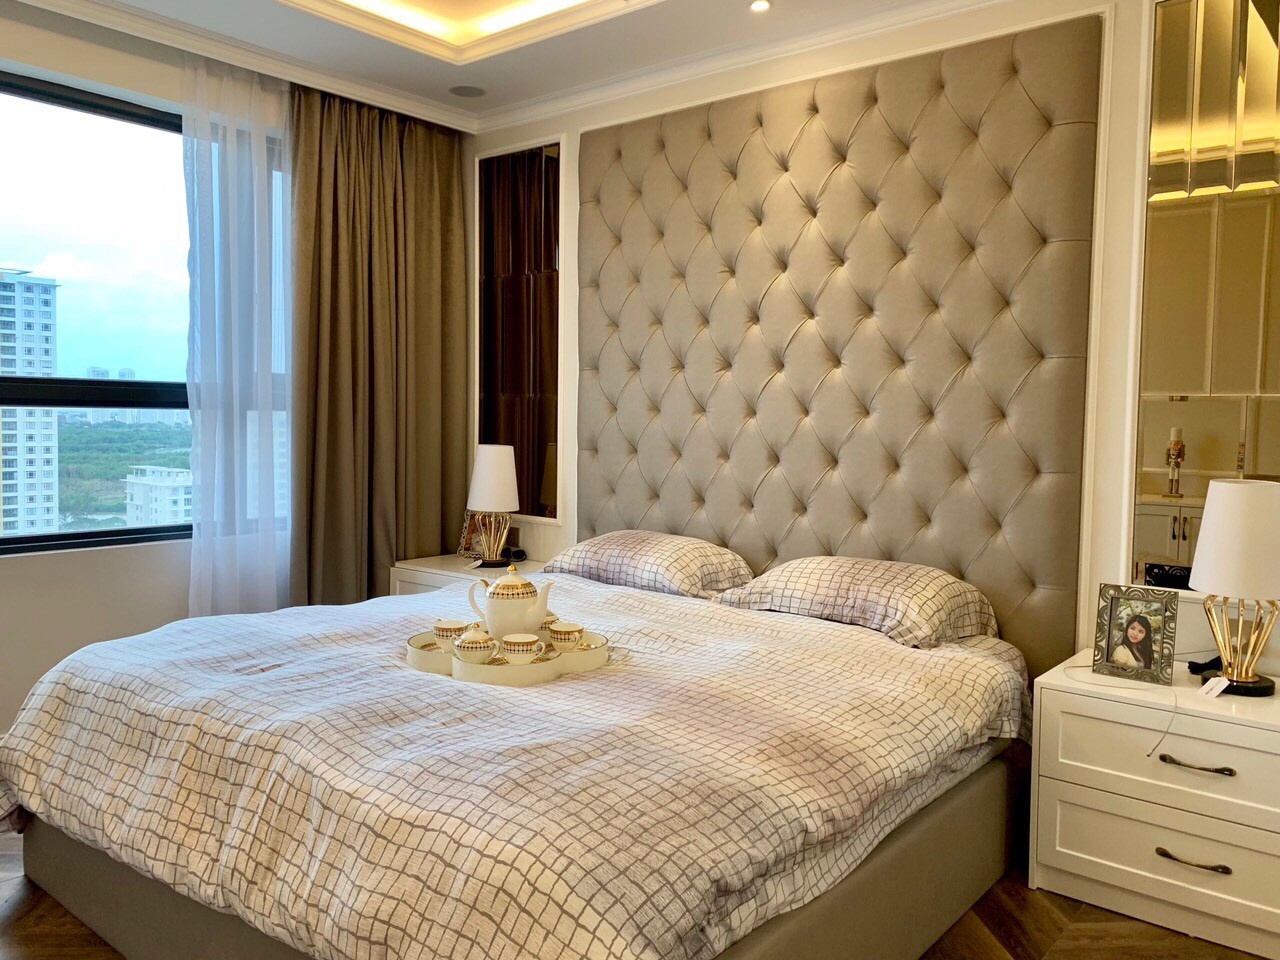 Cho thuê khách sạn trung tâm Phú Mỹ Hưng, Quận 7 phòng đẹp đang Kinh doanh có đủ giấy phép LH: 0915 21 3434 PHONG.